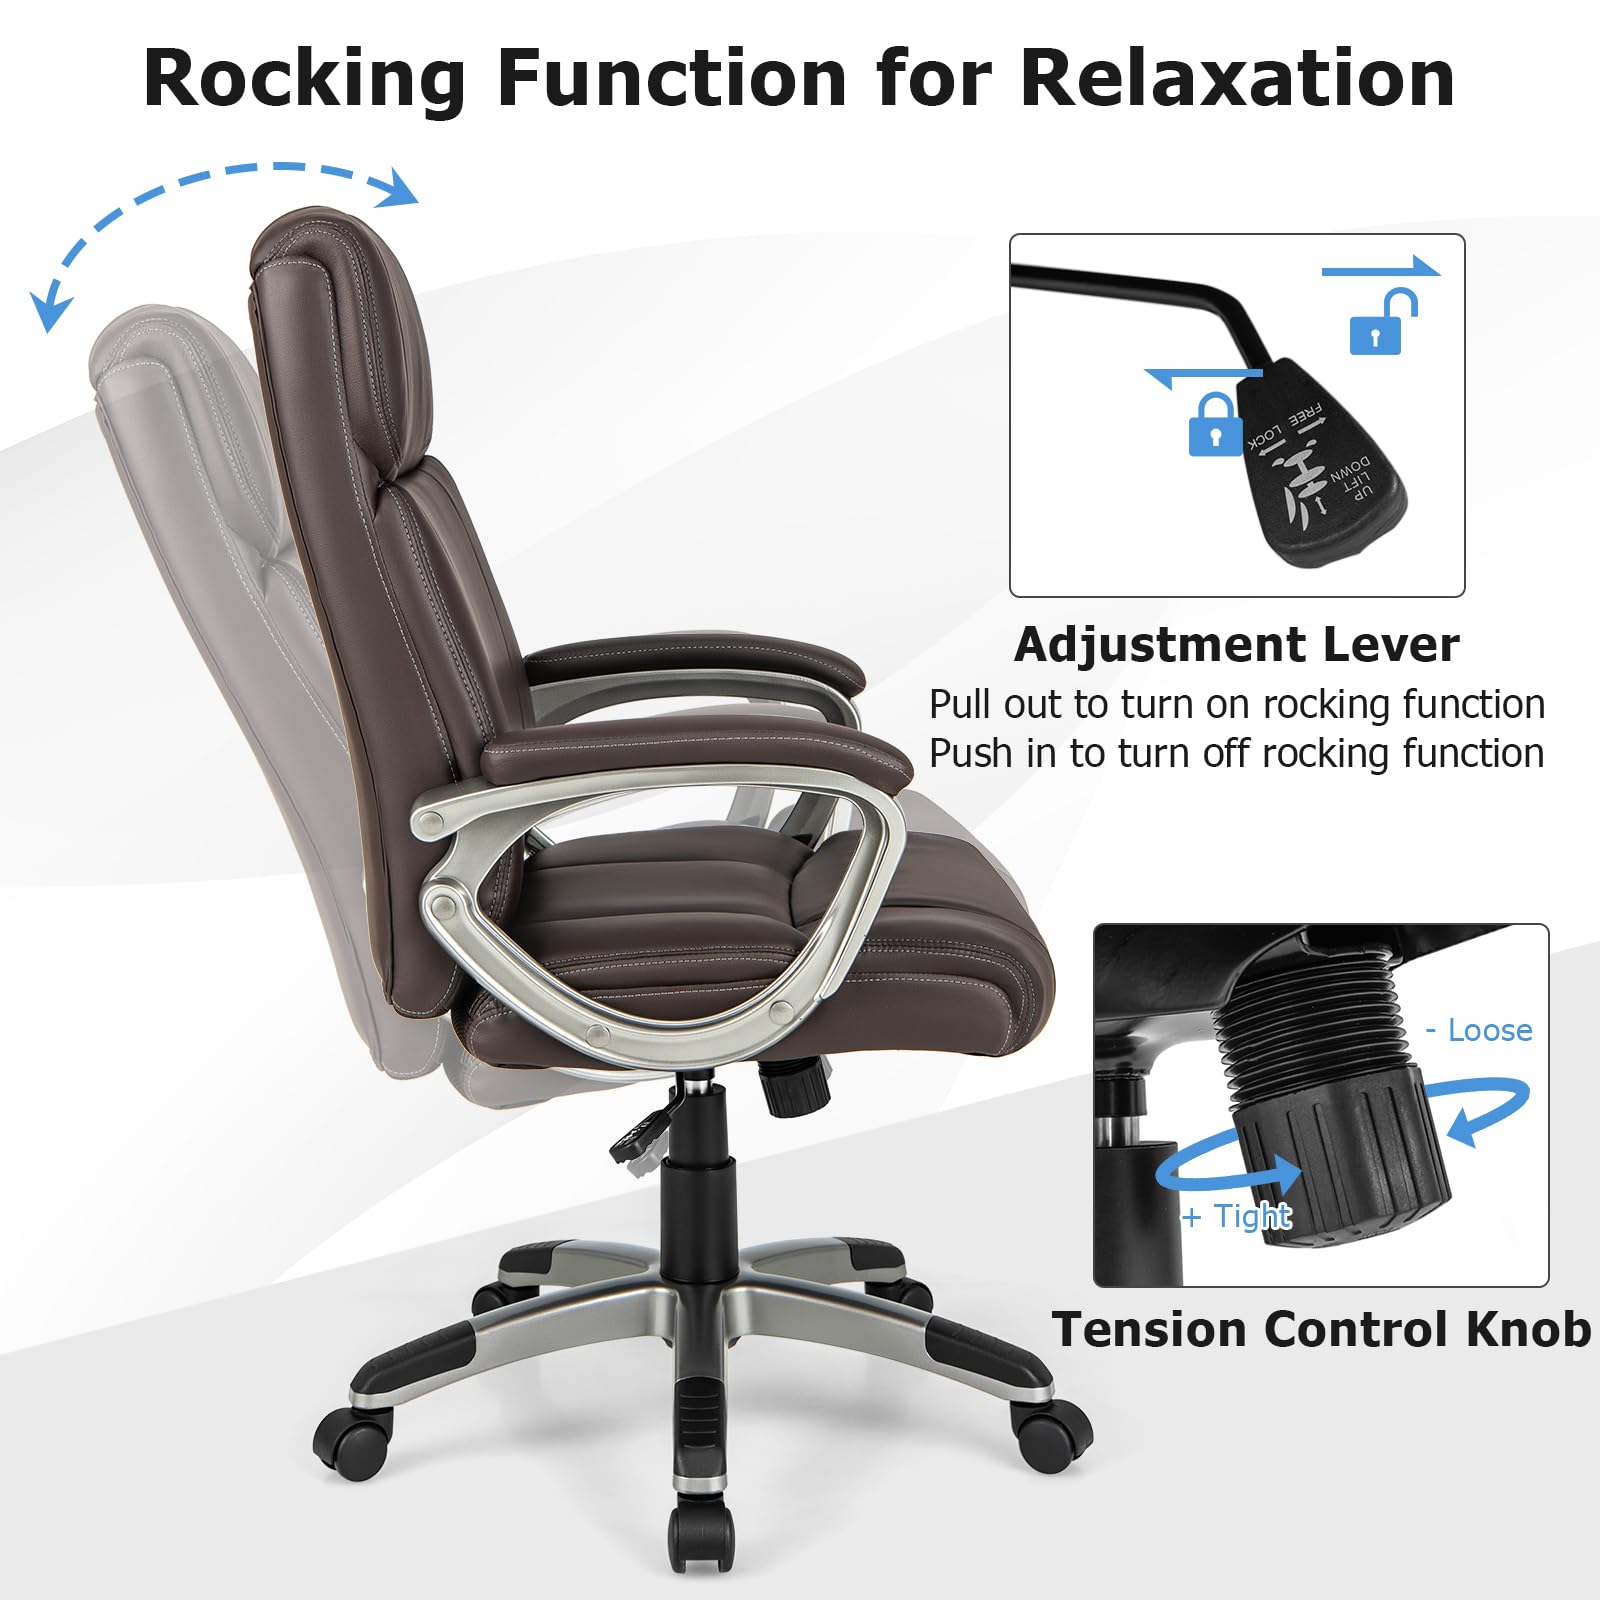 Giantex Executive Office Chair